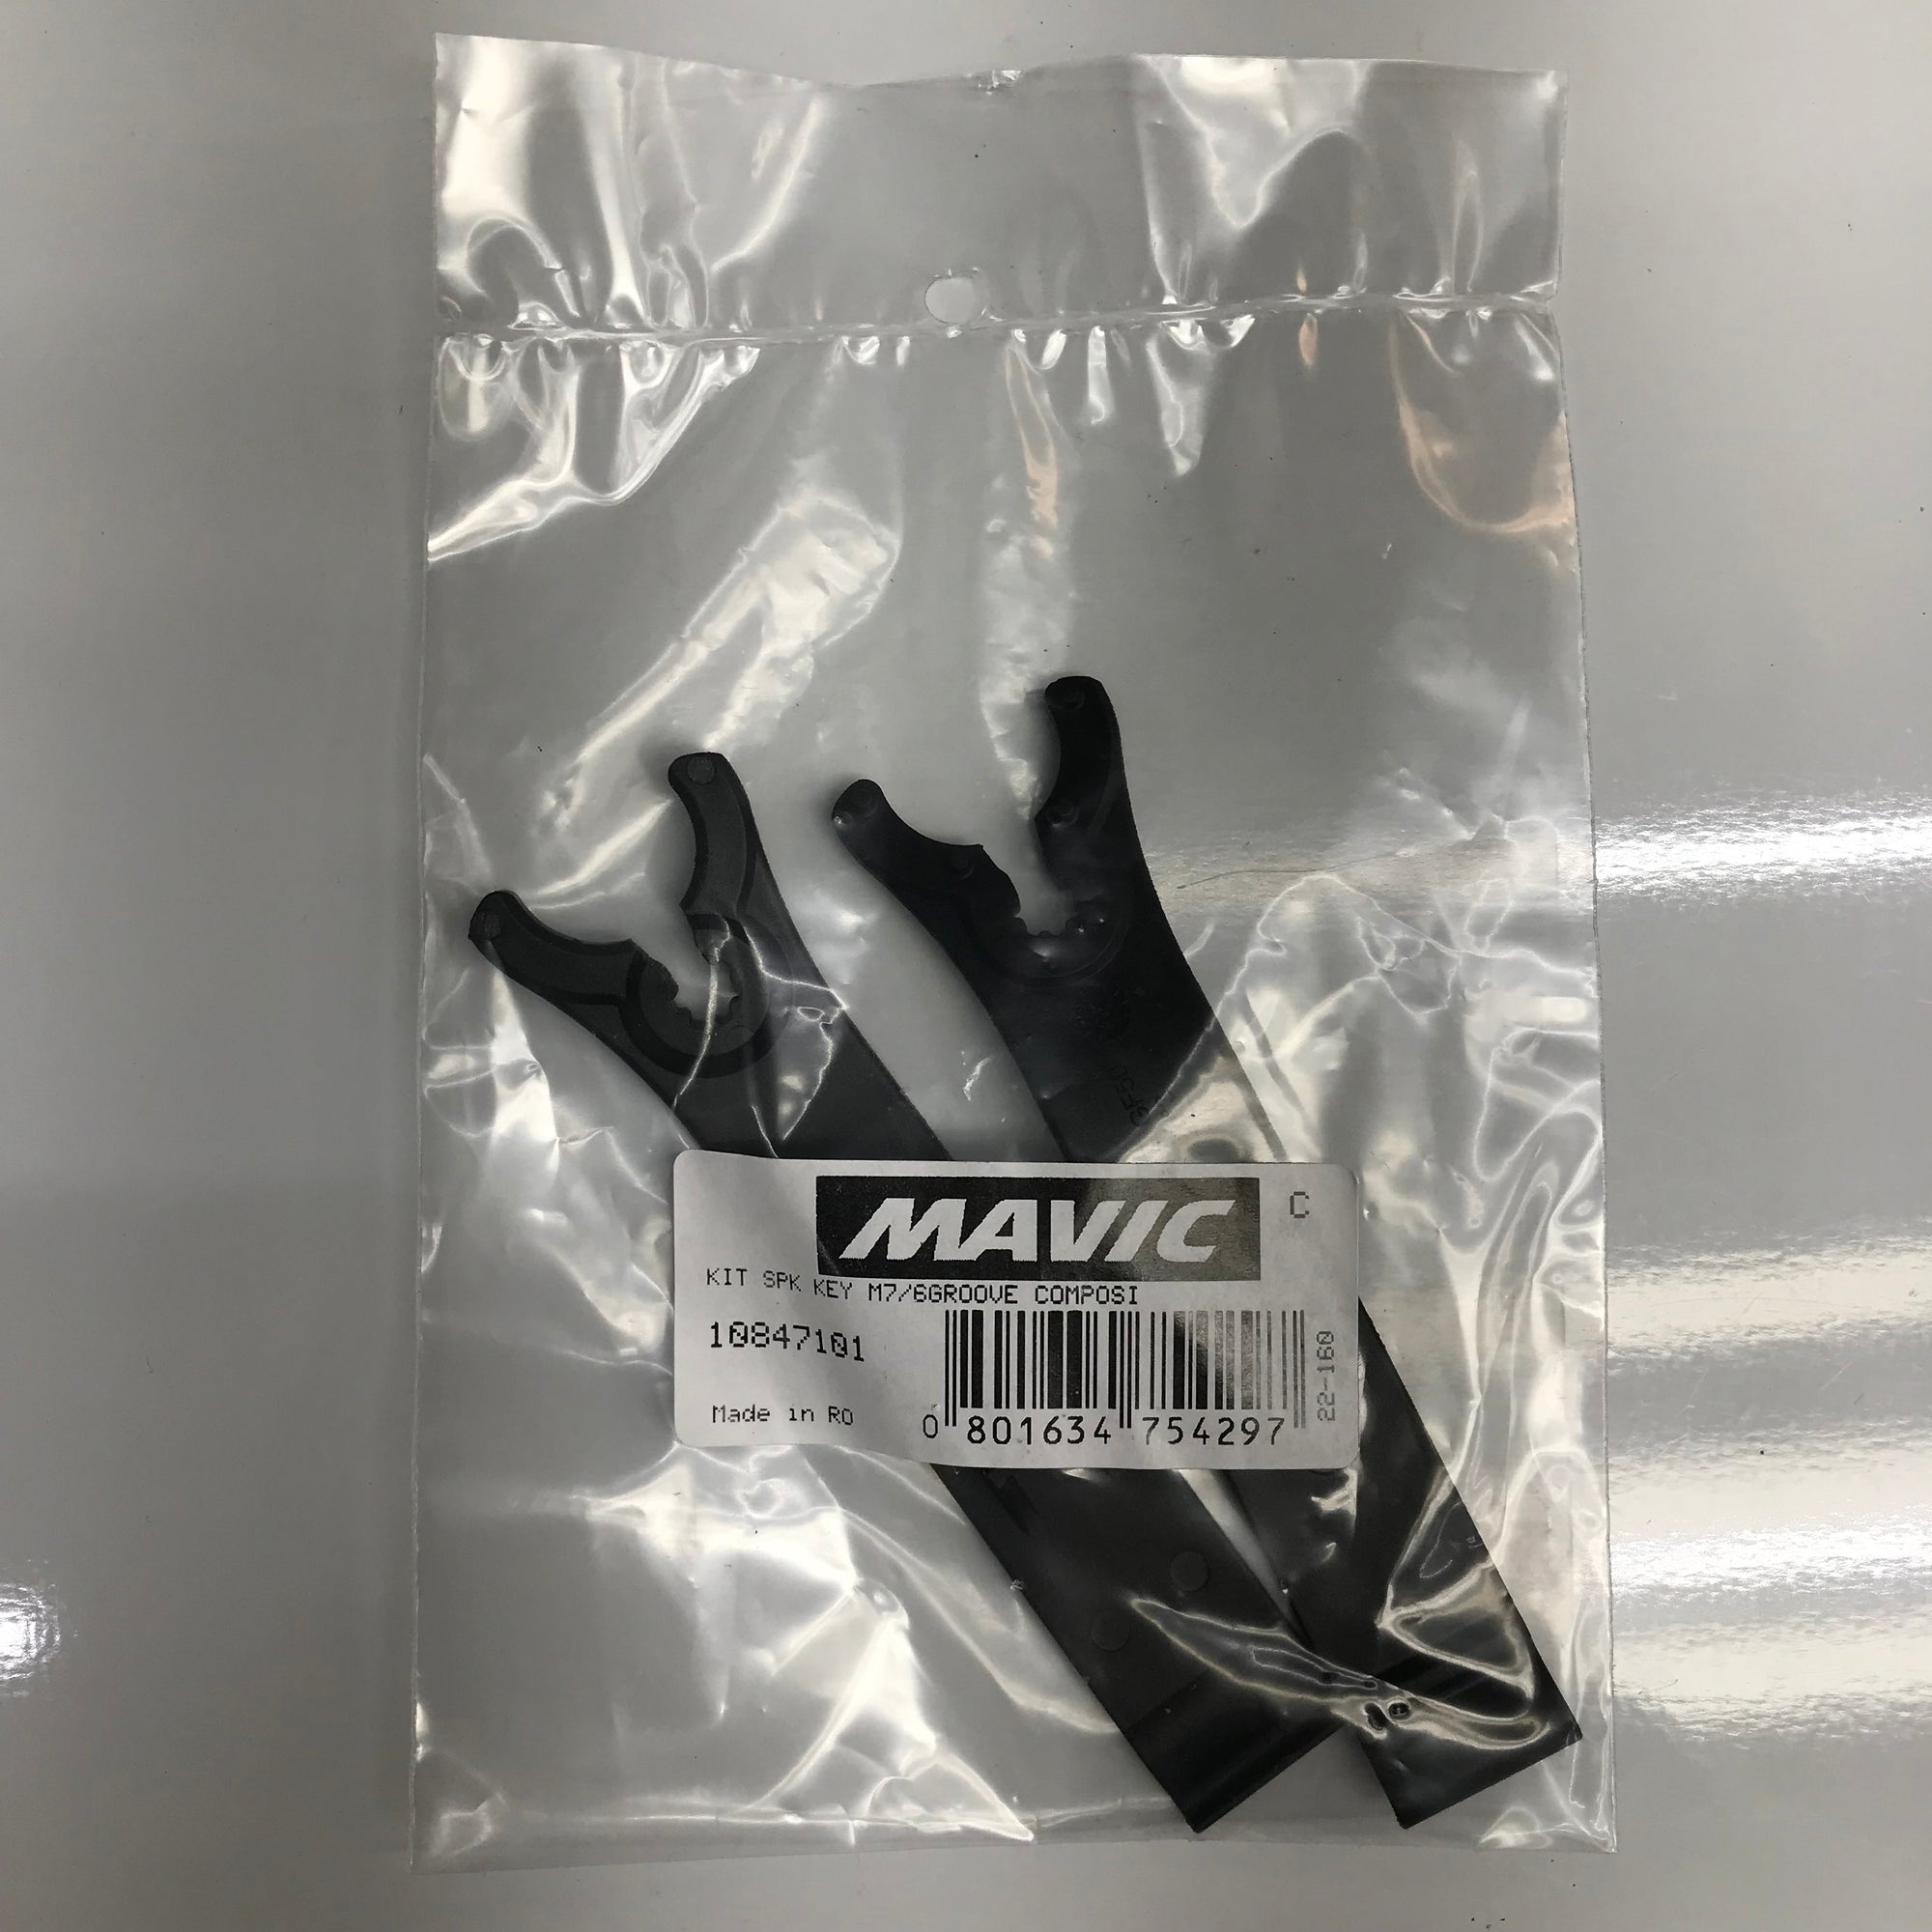 Mavic hub tool, 10847101 Mavic tire lever